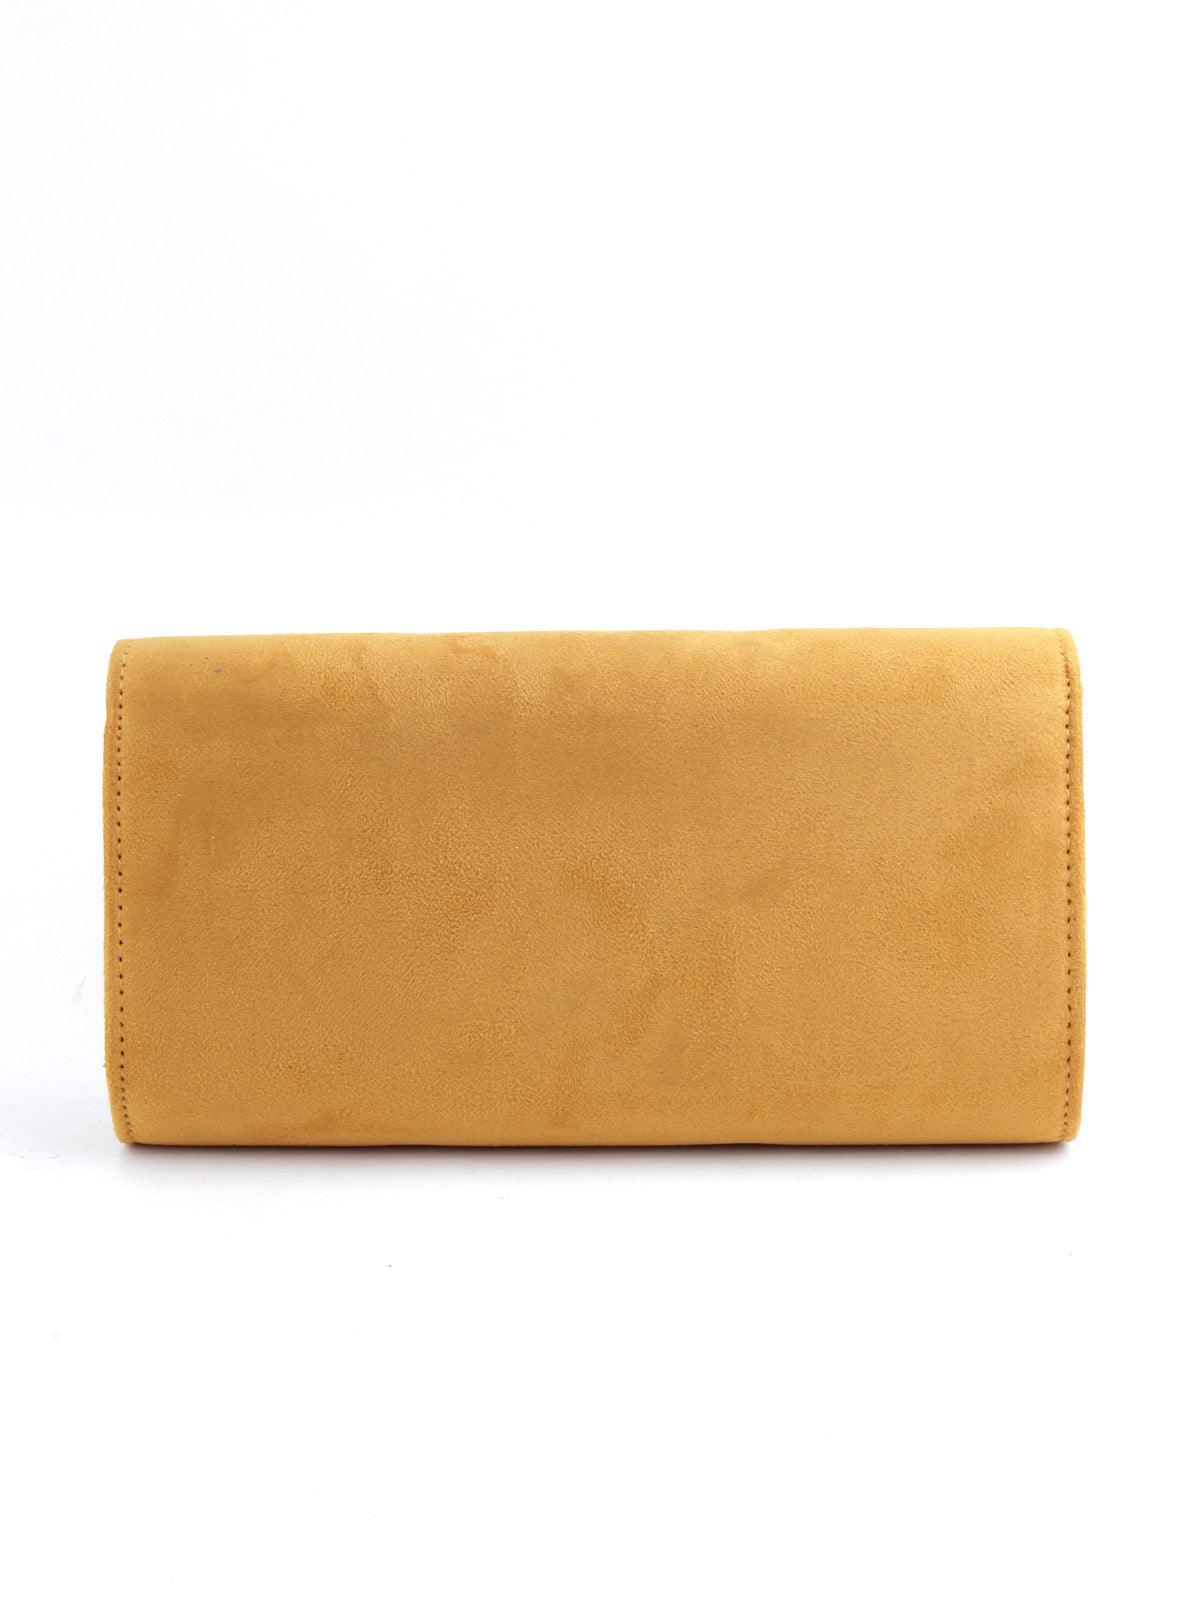 Rectangular Amber Yellow Velvet Touch Envelope Clutch - Odette